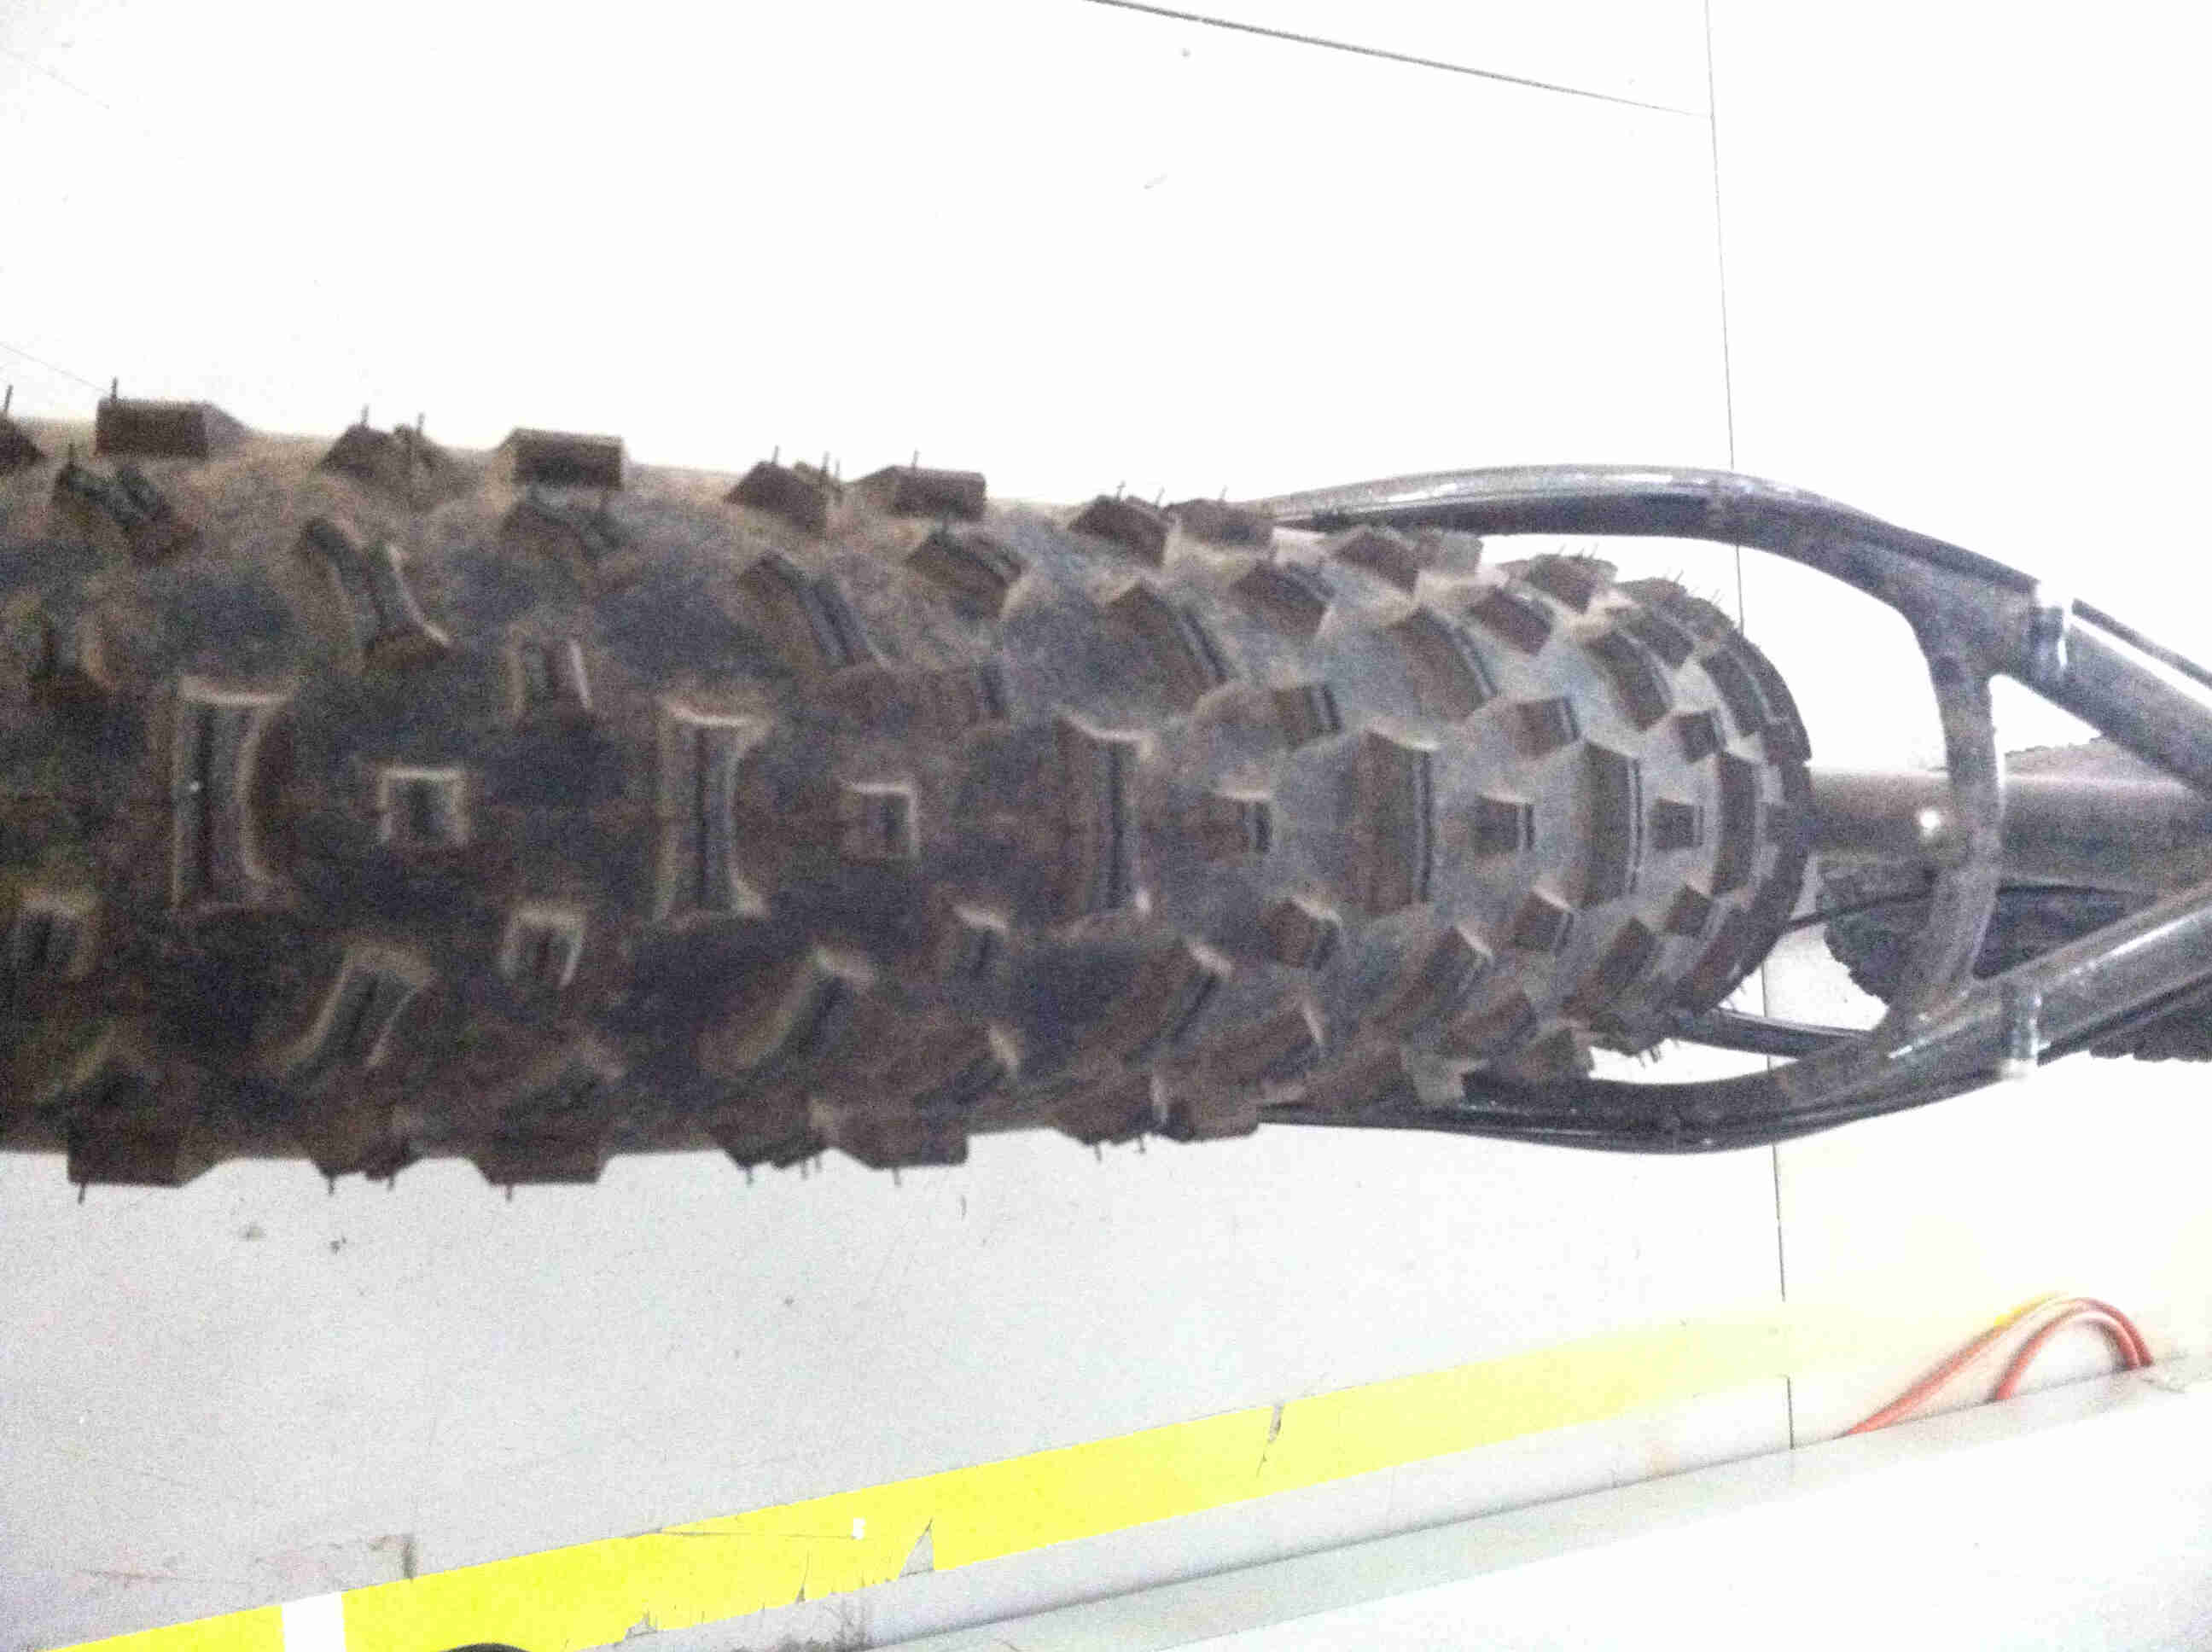 Rear, downward view of a rear wheel on a black Surly fat bike